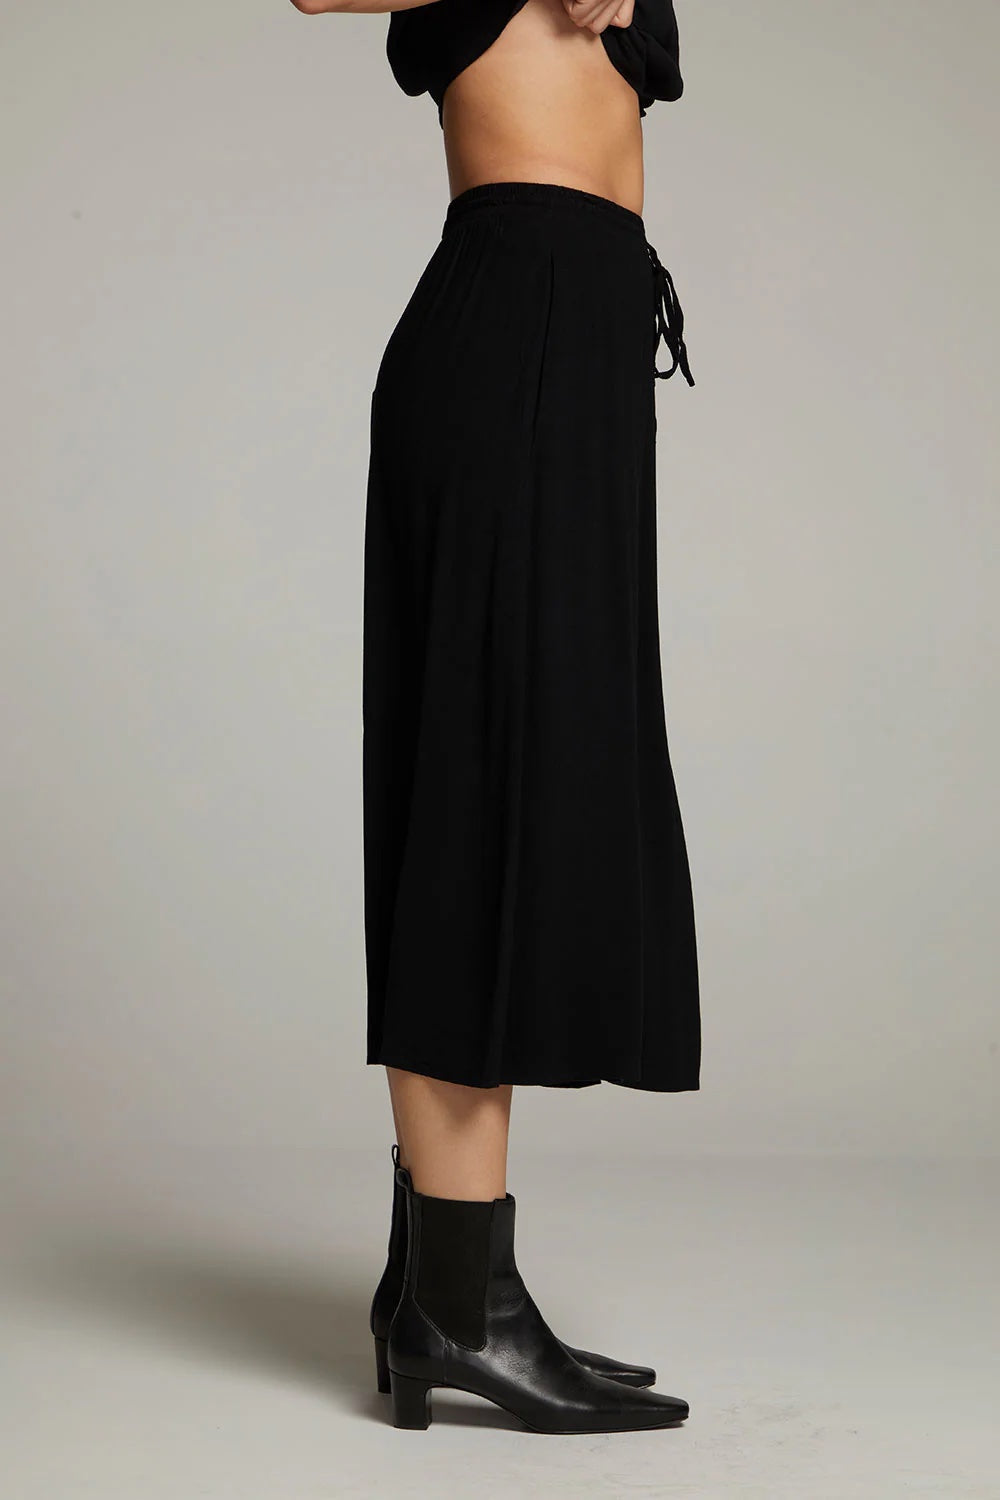 Chaser Darby Midi Skirt Black